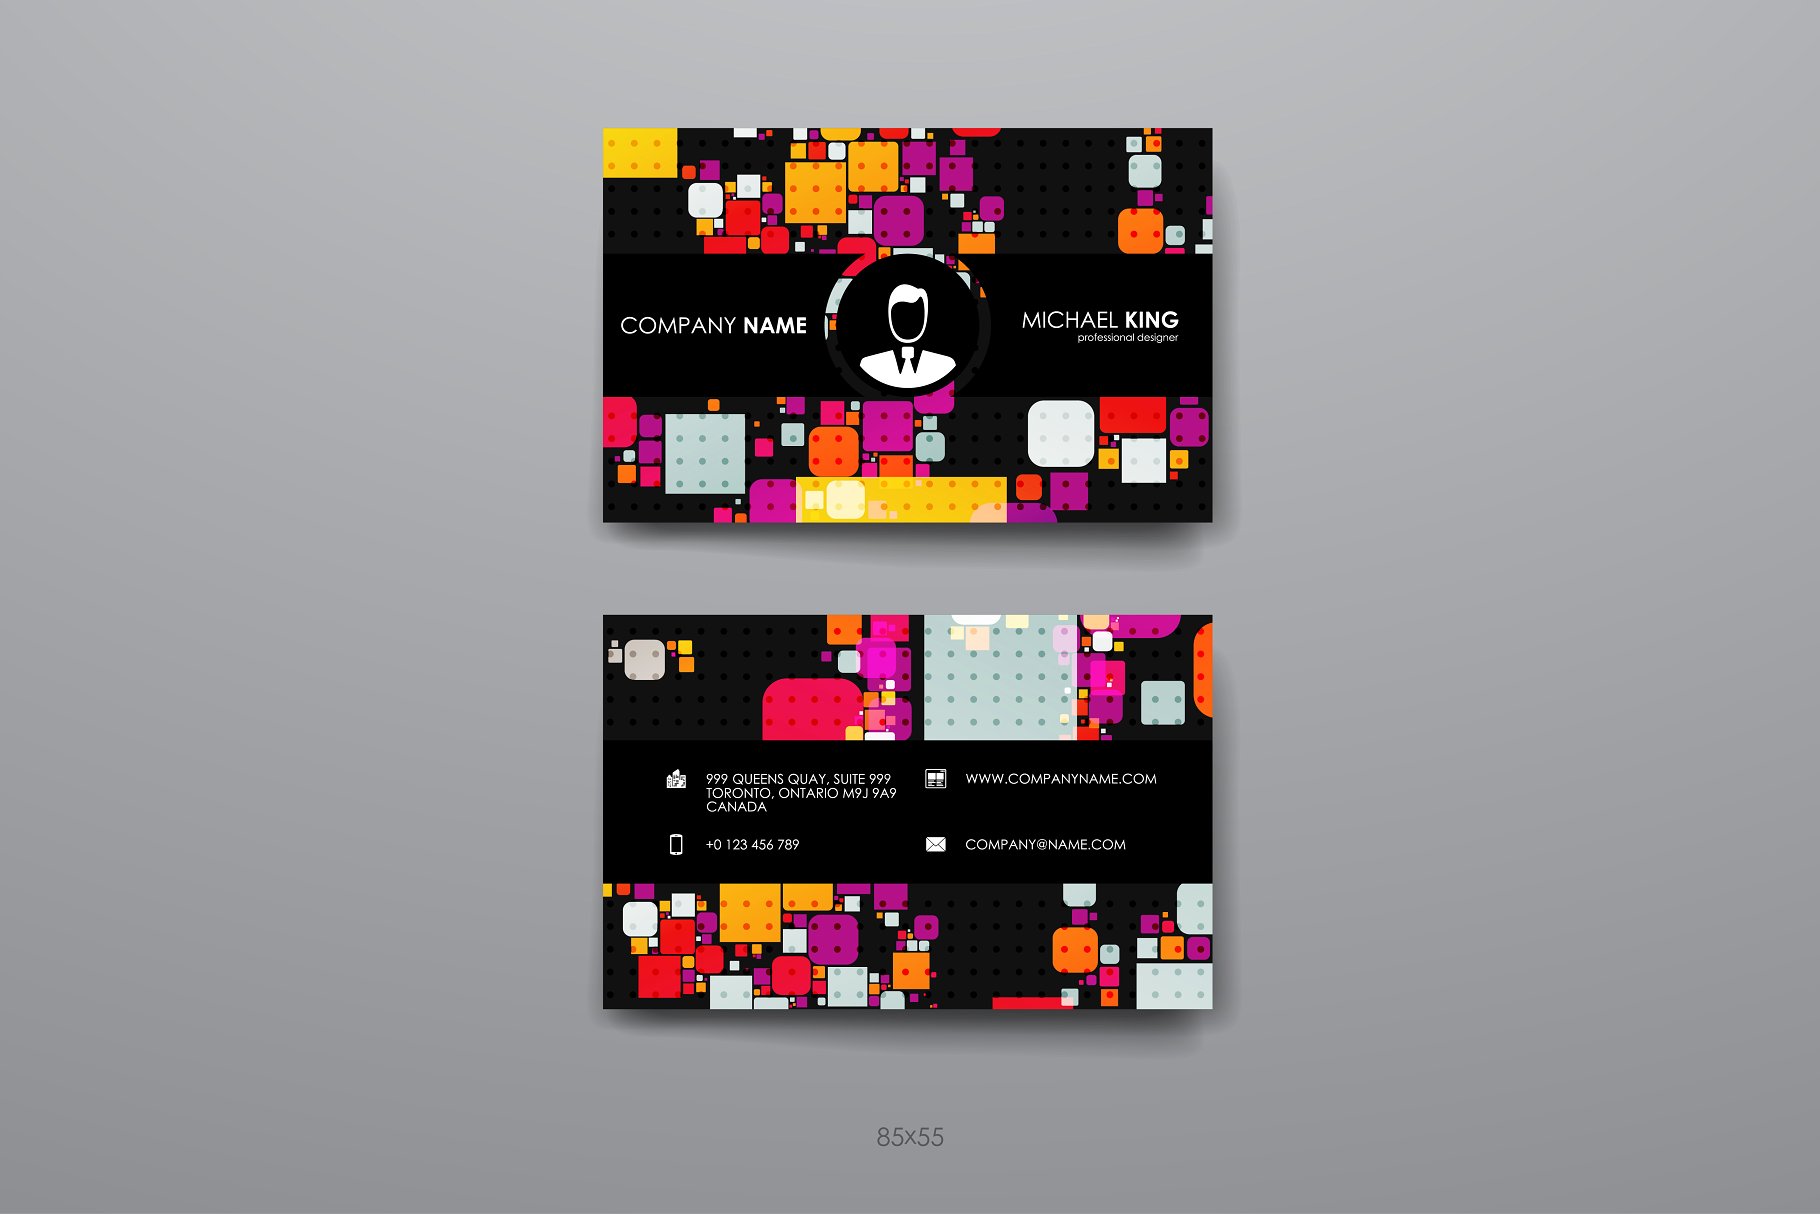 8款企业个人名片抽象设计模板 8 Business Cards插图(6)